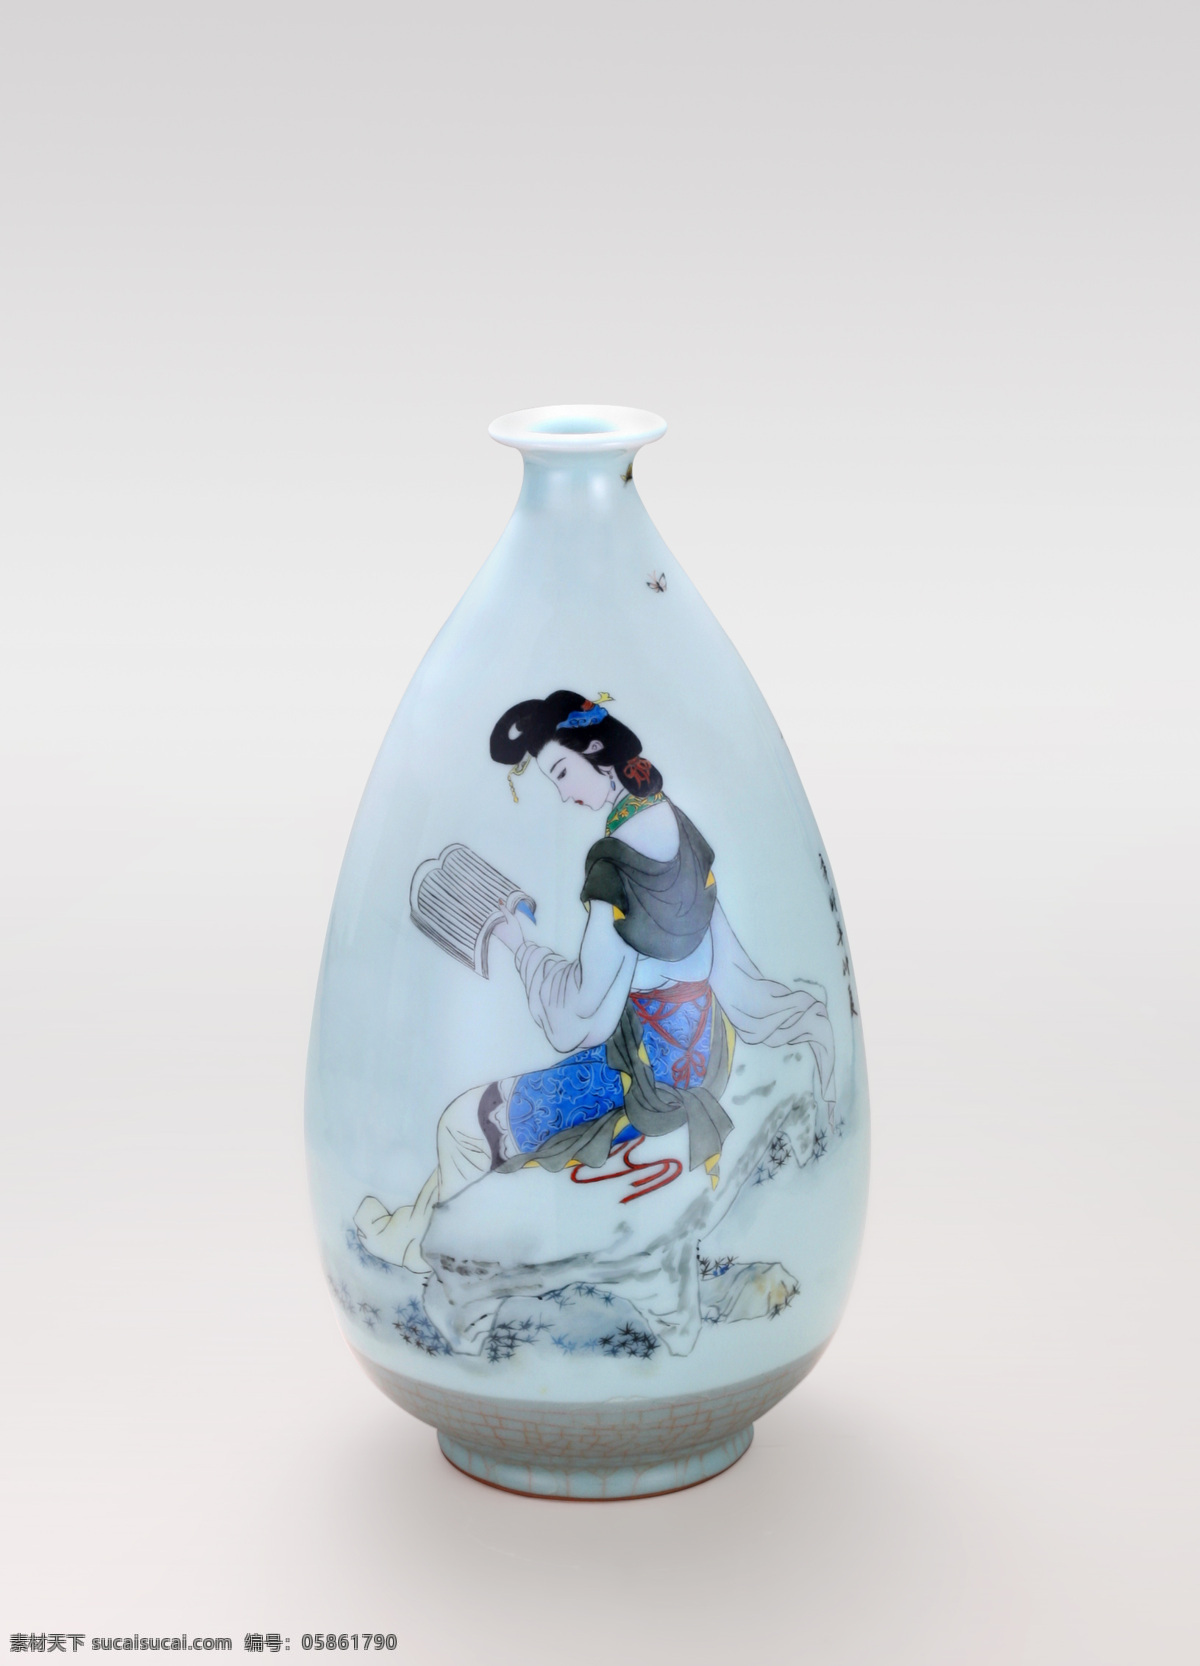 手绘彩瓷瓶 龙泉青瓷 手绘 仕女图 装饰精品 彩瓷瓶 传统文化 文化艺术